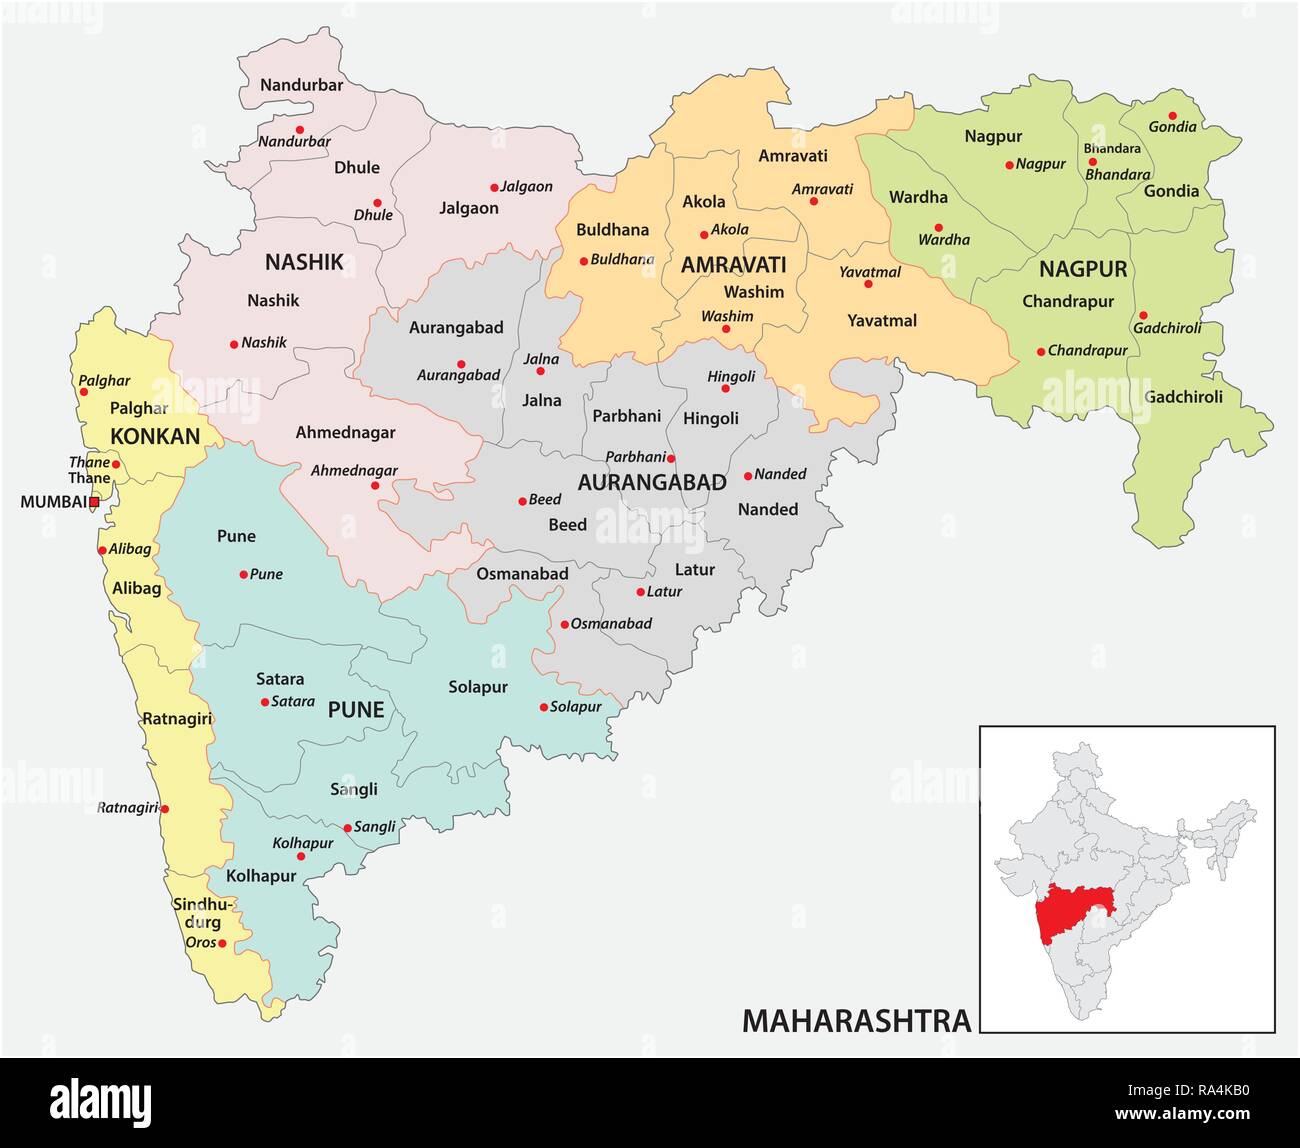 La carte administrative et politique de l'état indien du Maharashtra, Inde Illustration de Vecteur